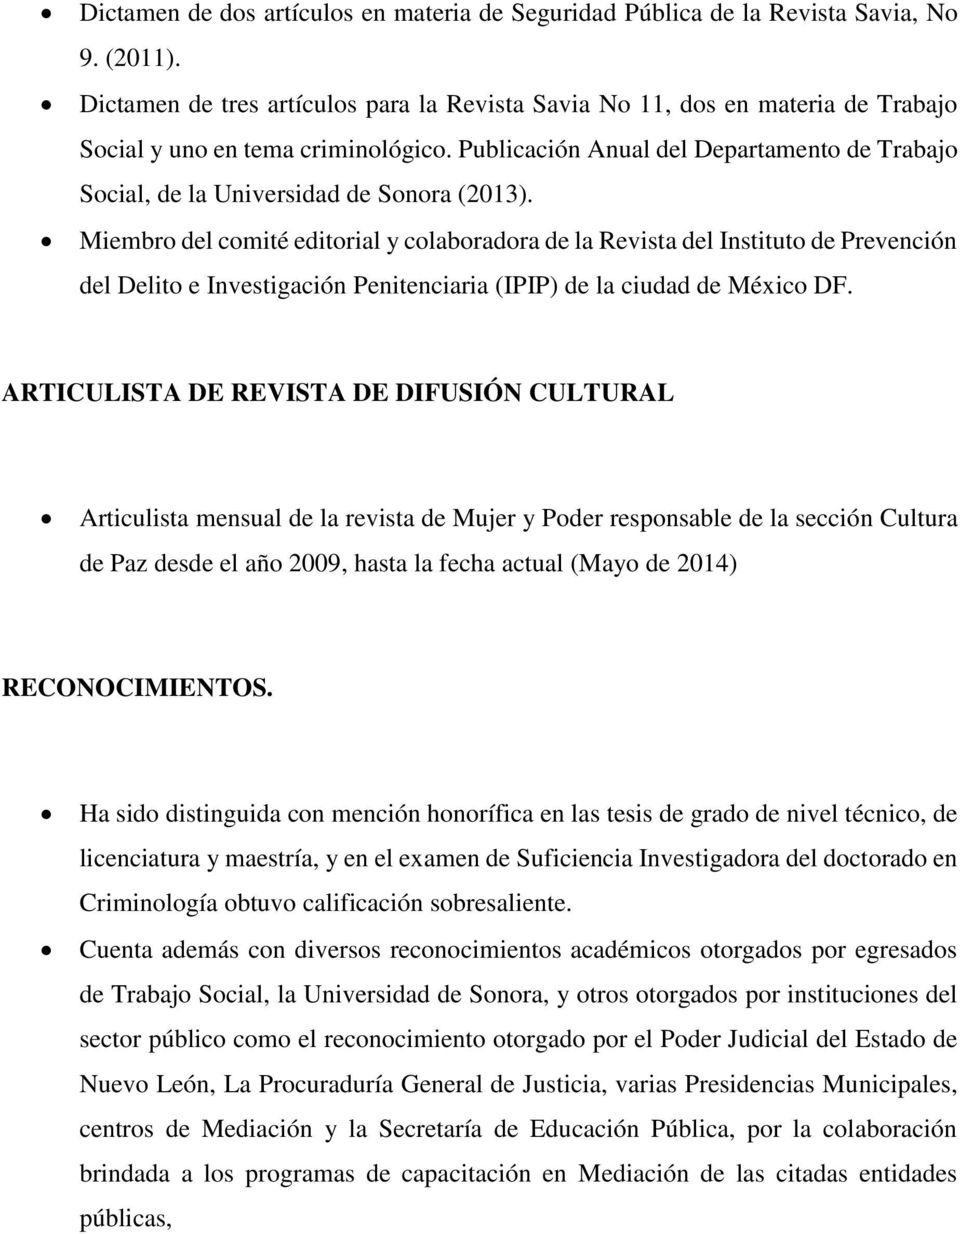 Publicación Anual del Departamento de Trabajo Social, de la Universidad de Sonora (2013).